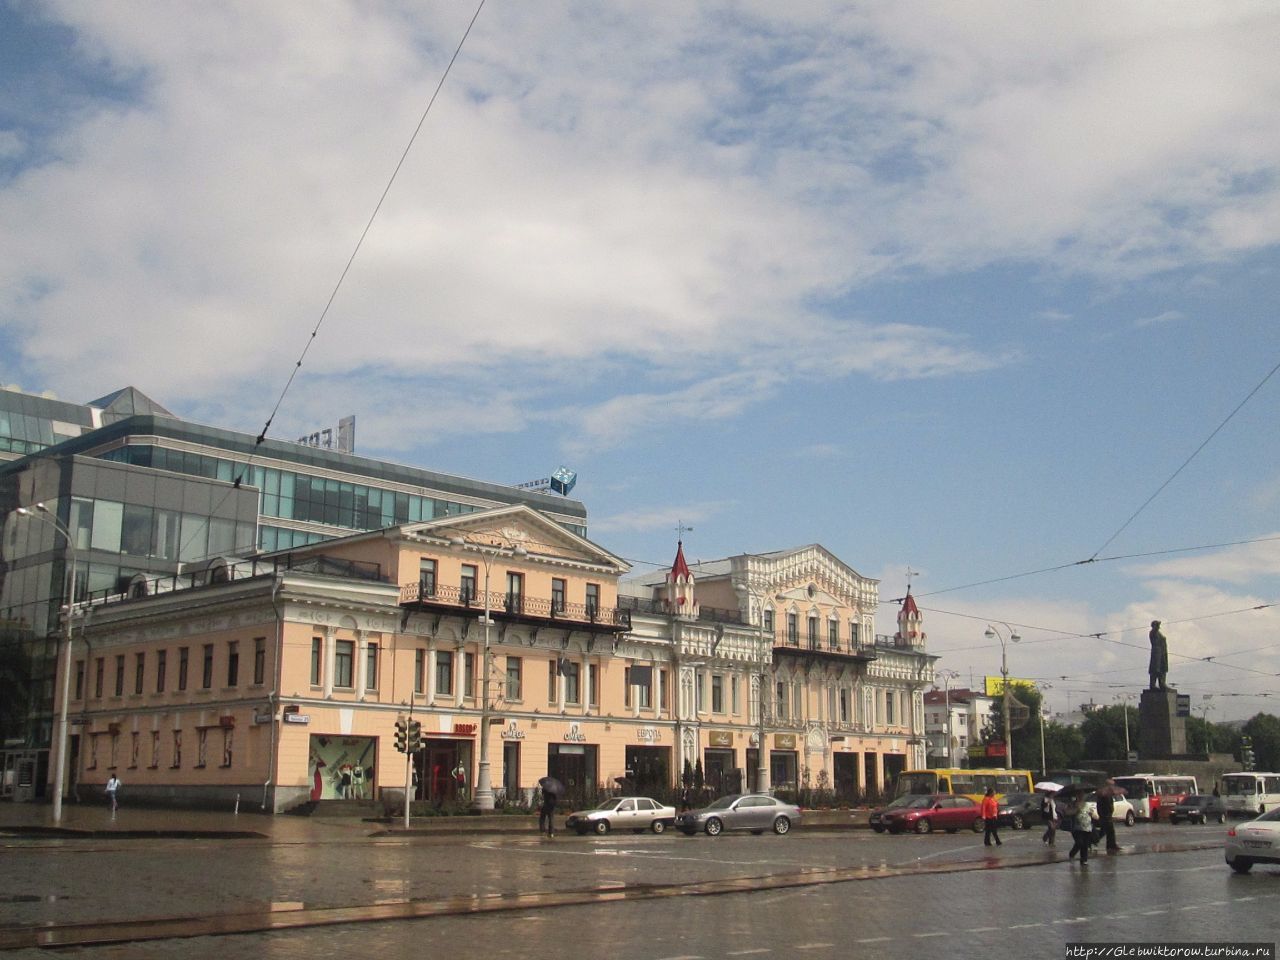 Прогулка по центру города 17 июля Екатеринбург, Россия